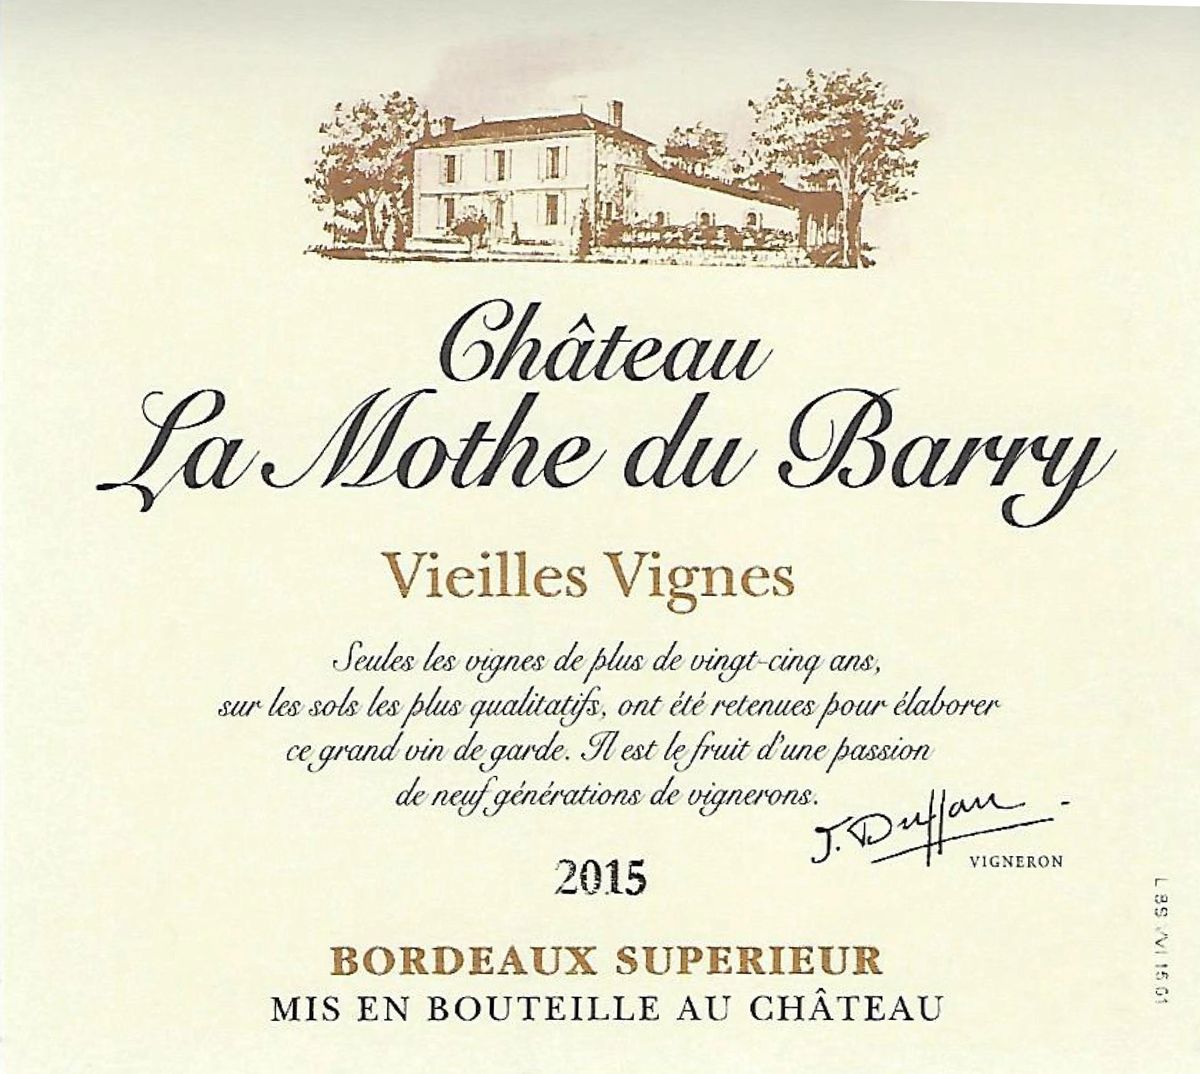 Chateau La Mothe du Barry “Vieilles Vignes” 2015 (100% Merlot)